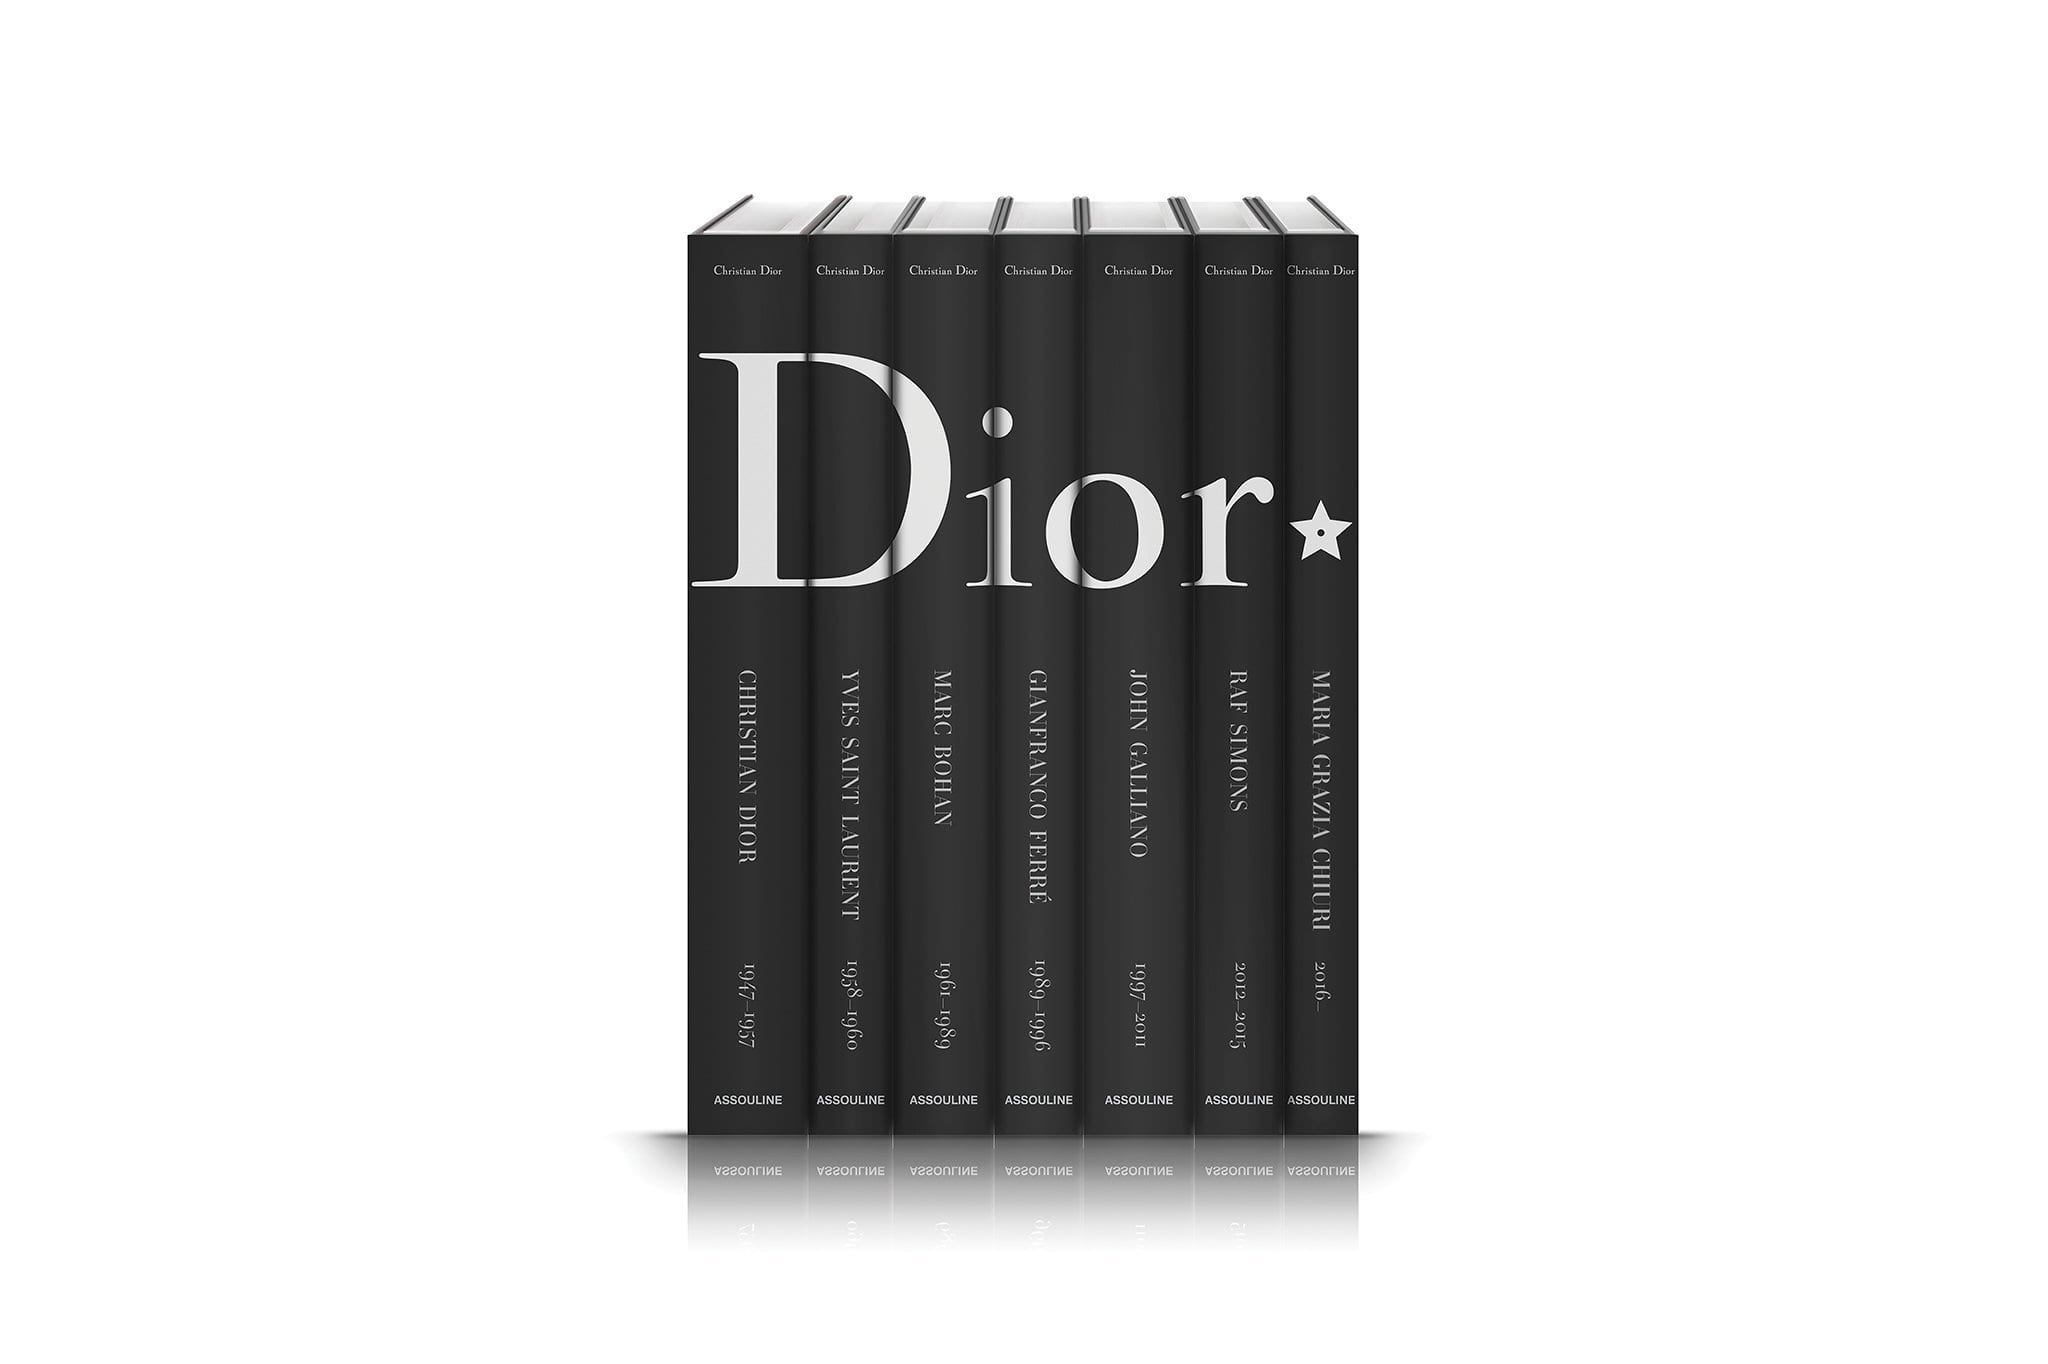 Assouline Dior von Christian Dior